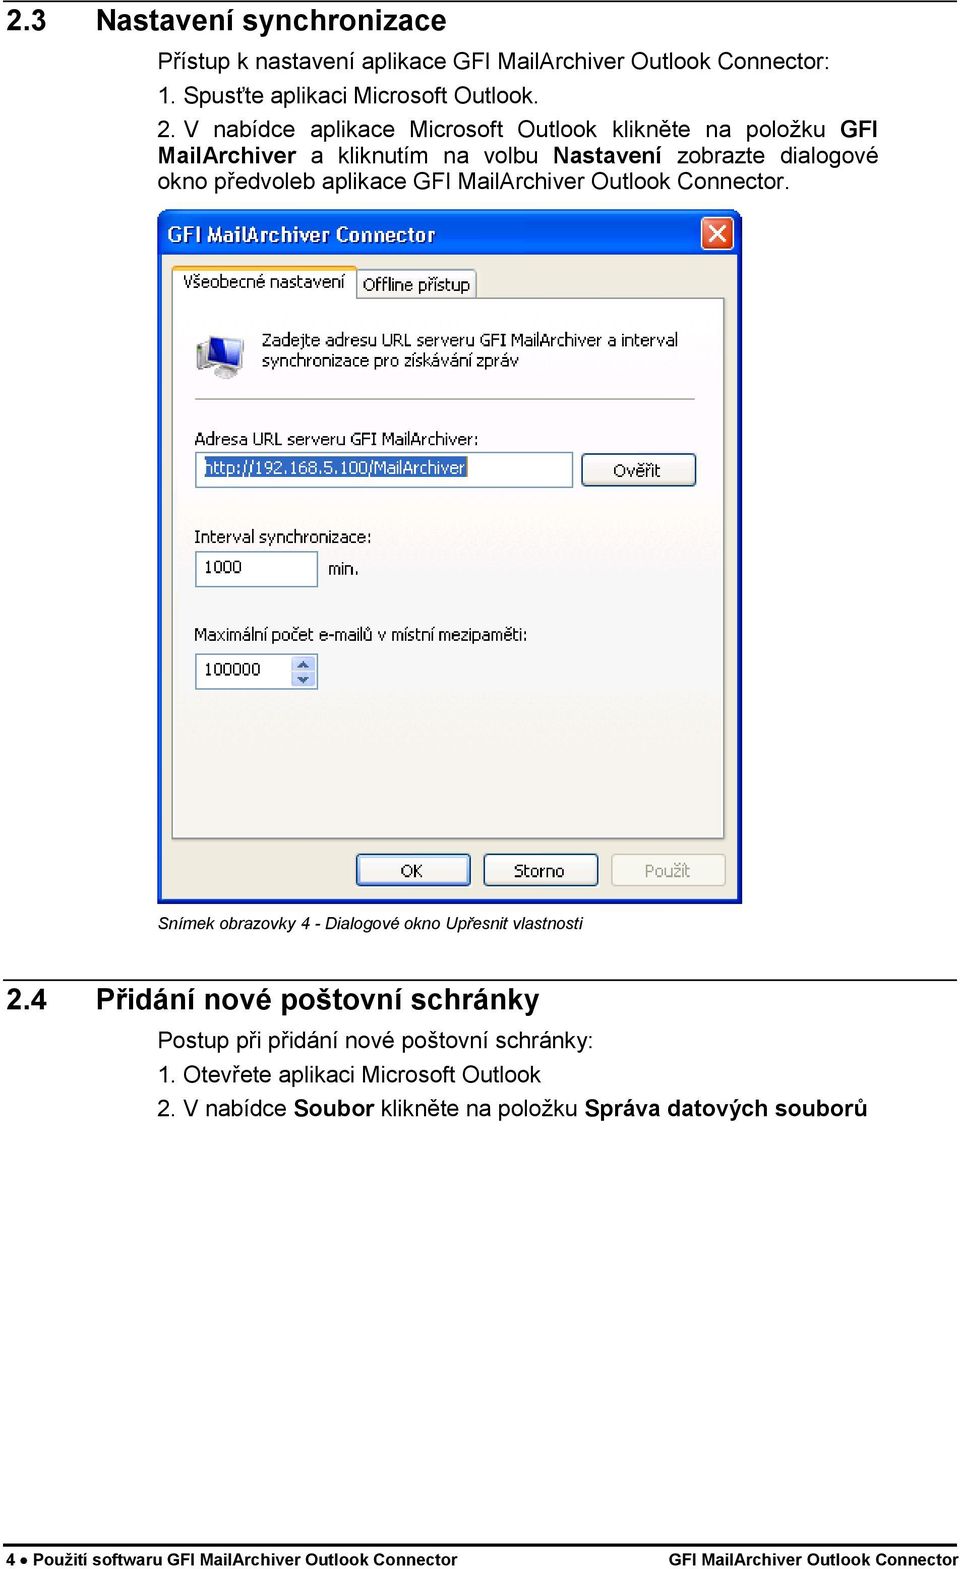 MailArchiver Outlook Connector. Snímek obrazovky 4 - Dialogové okno Upřesnit vlastnosti 2.